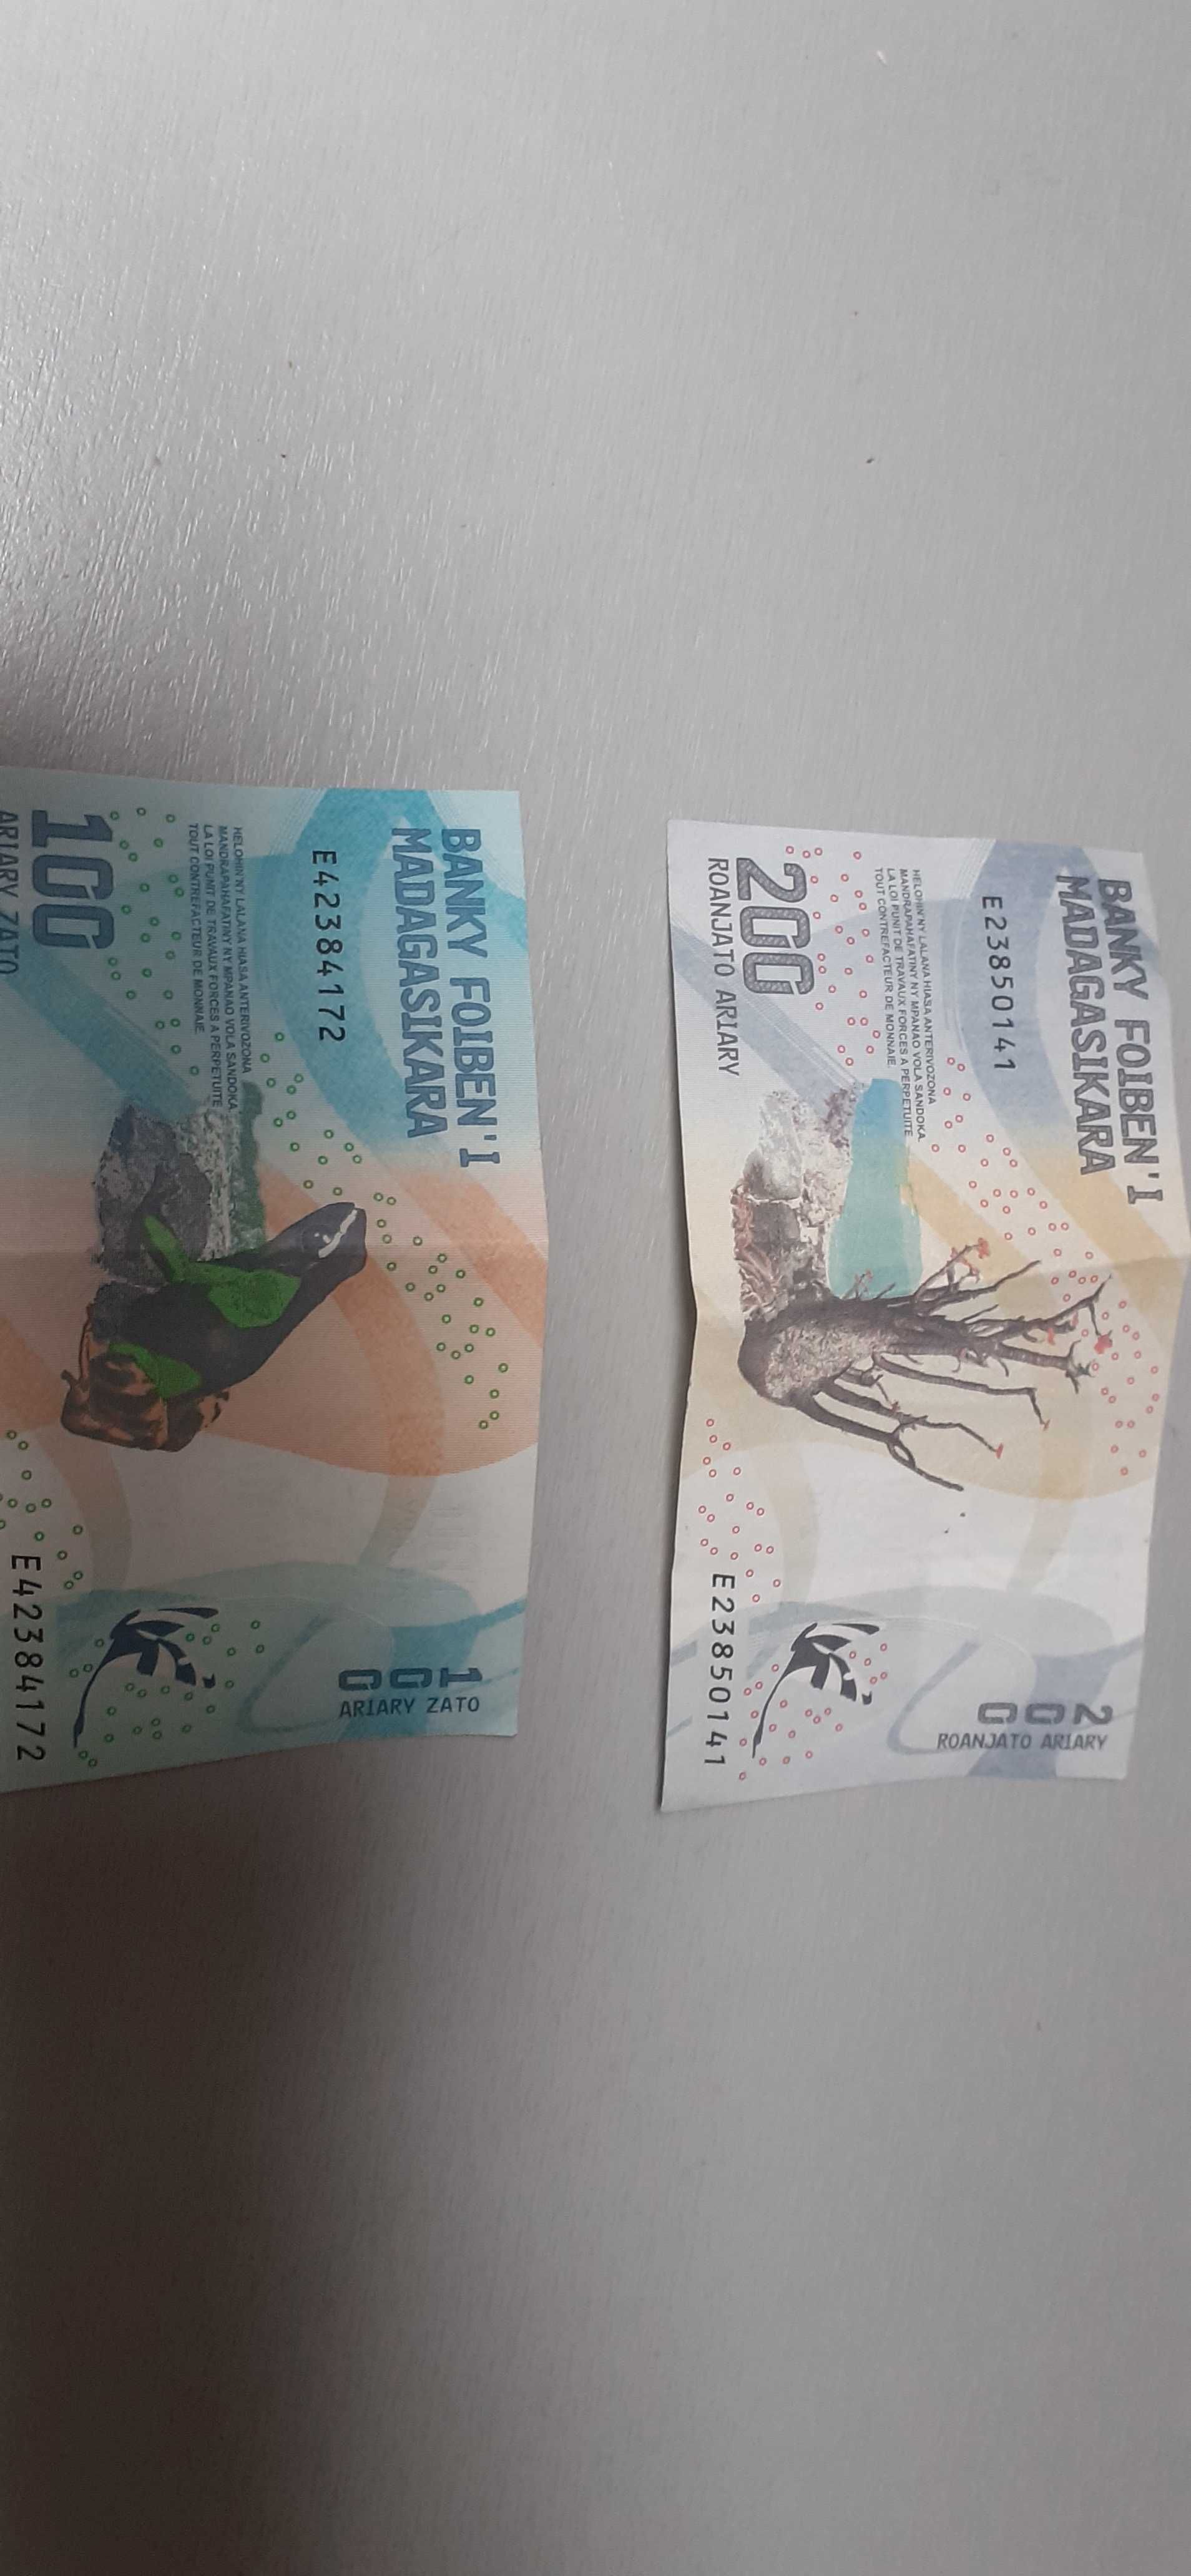 Banknot Chiny Madagaskar Argentyna